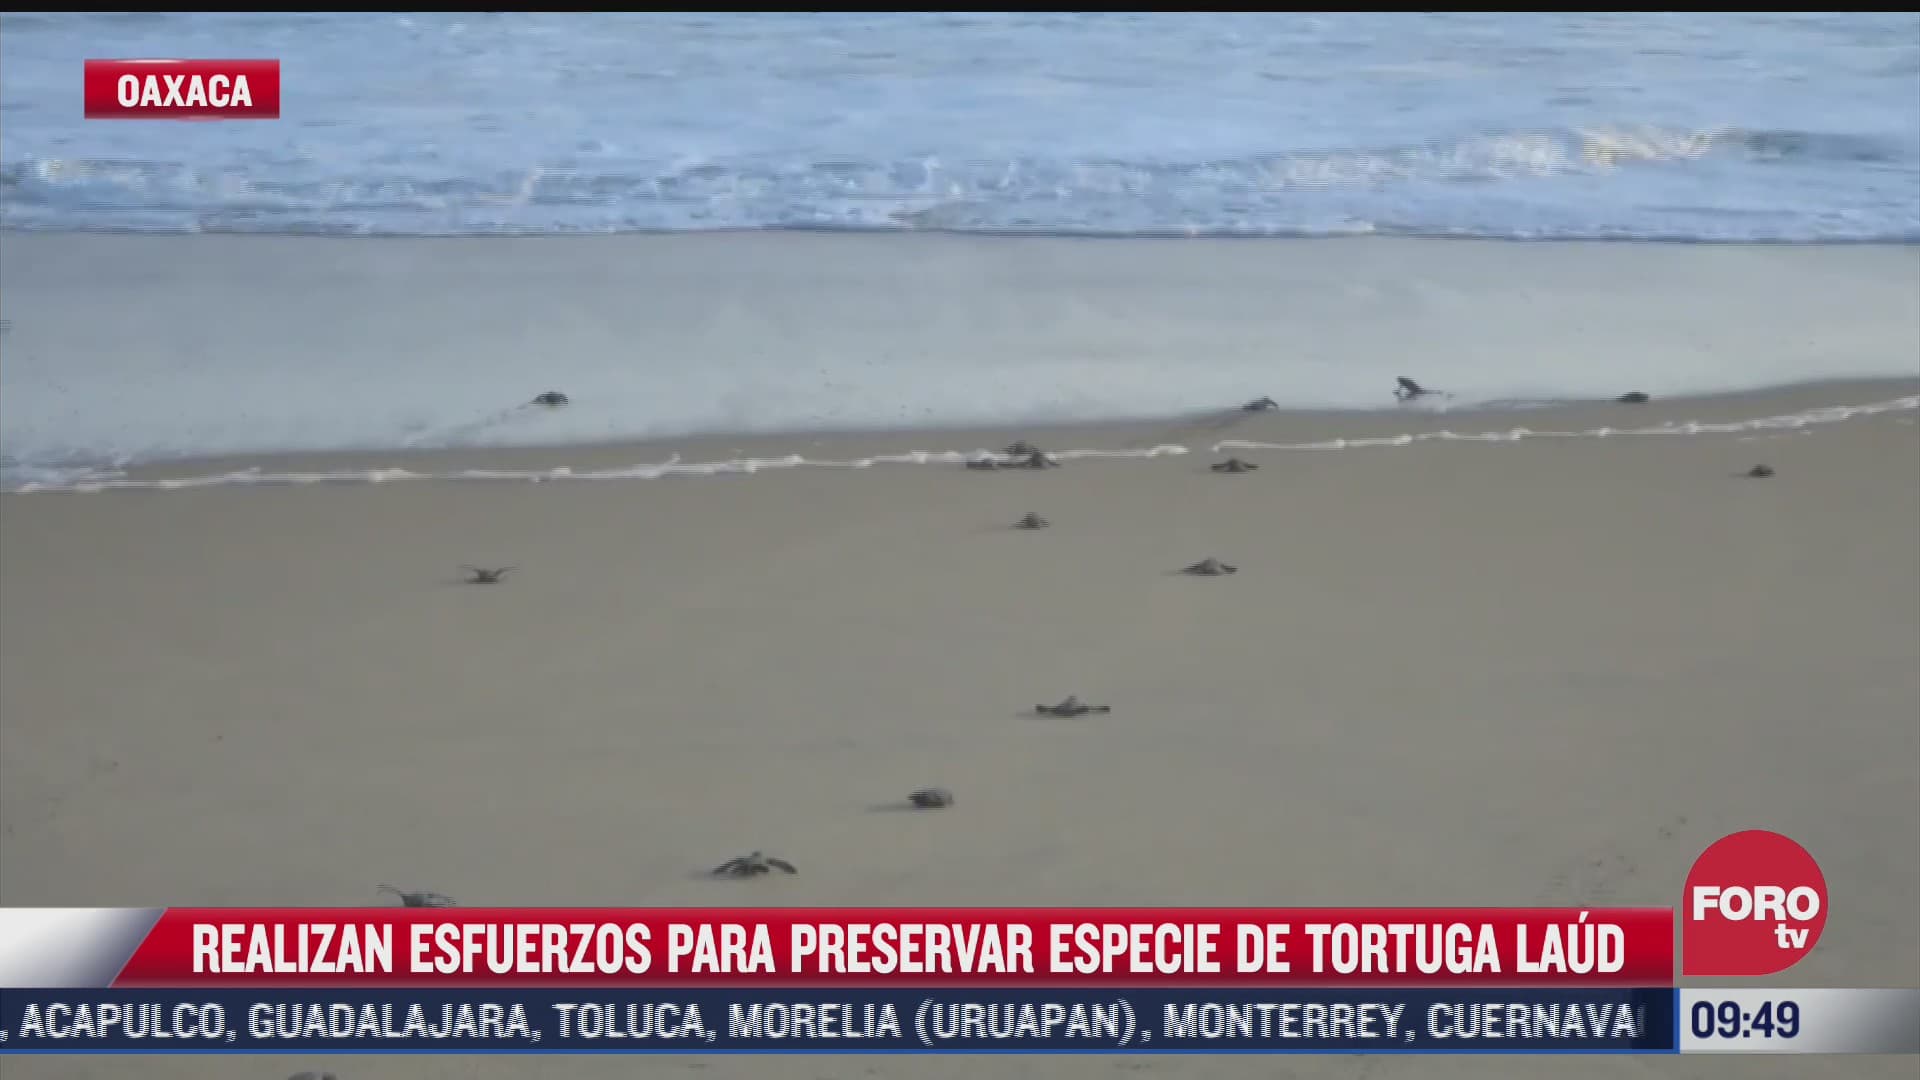 autoridades y grupos ambientalistas realizan esfuerzos para preservar las tortugas laud en oaxaca